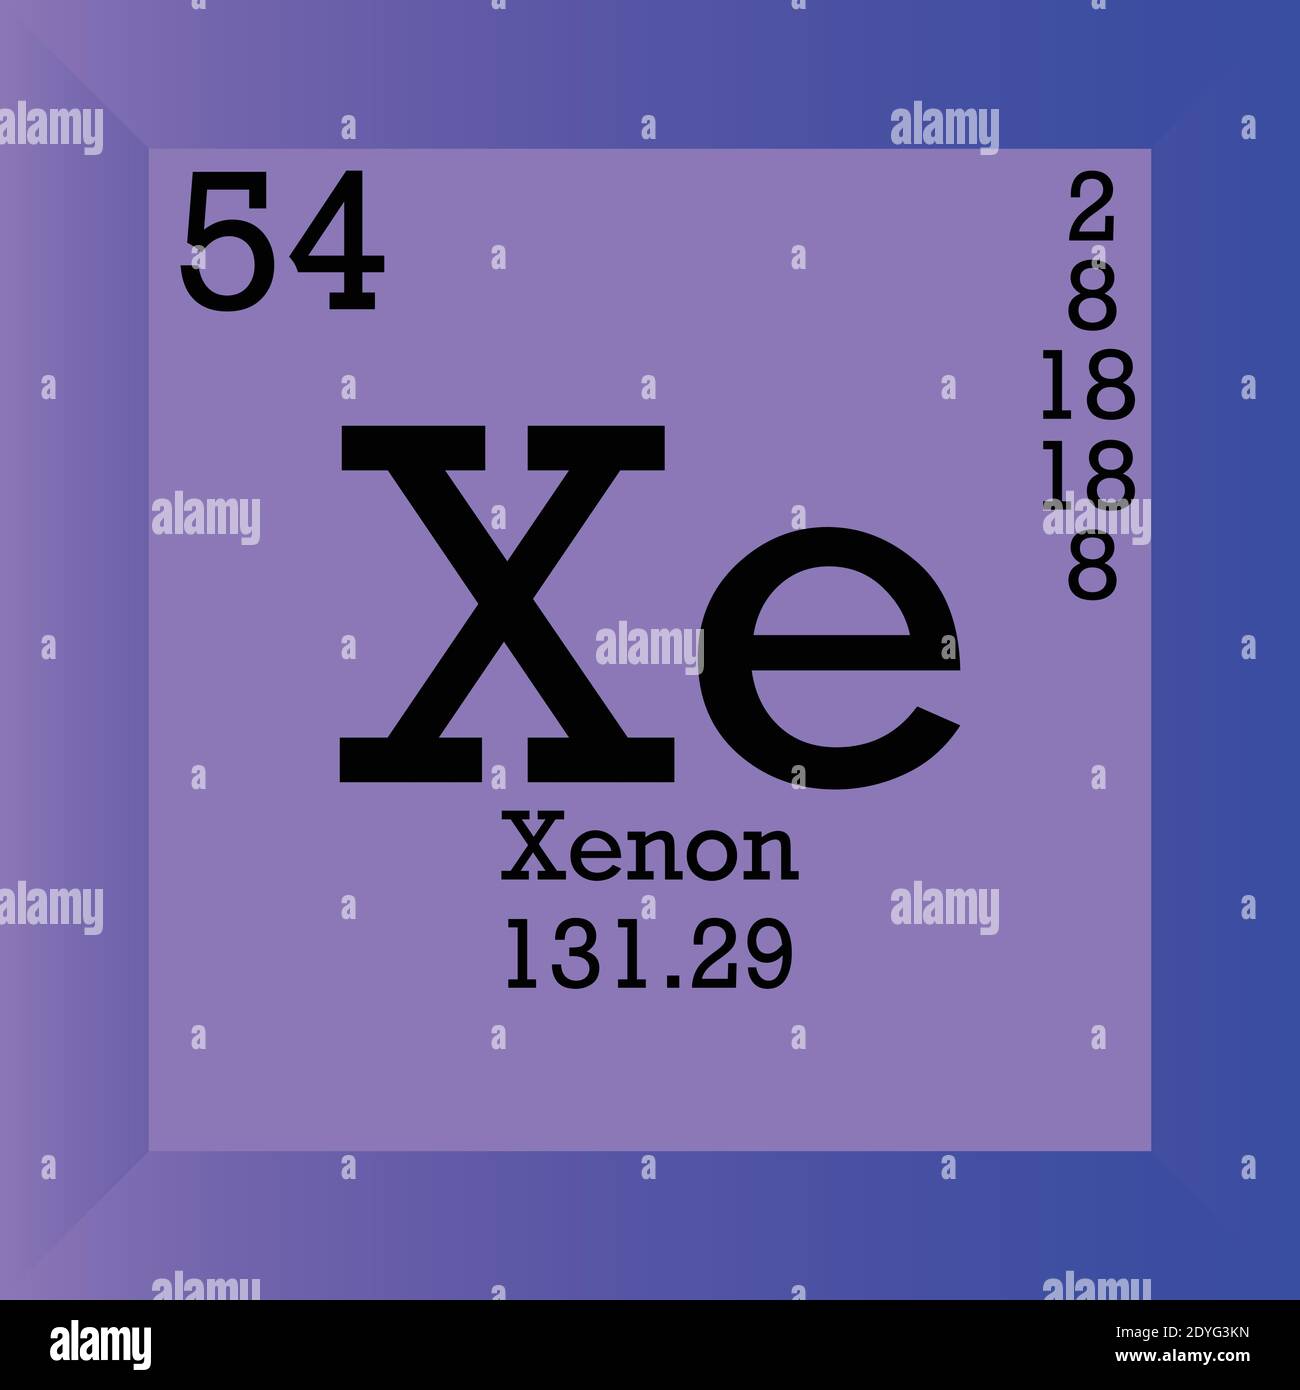 Ксенон вещество. Xe ксенон элемент. Ксенон химический элемент. Ксенон xe. Ксенон химический элемент история возникновения.